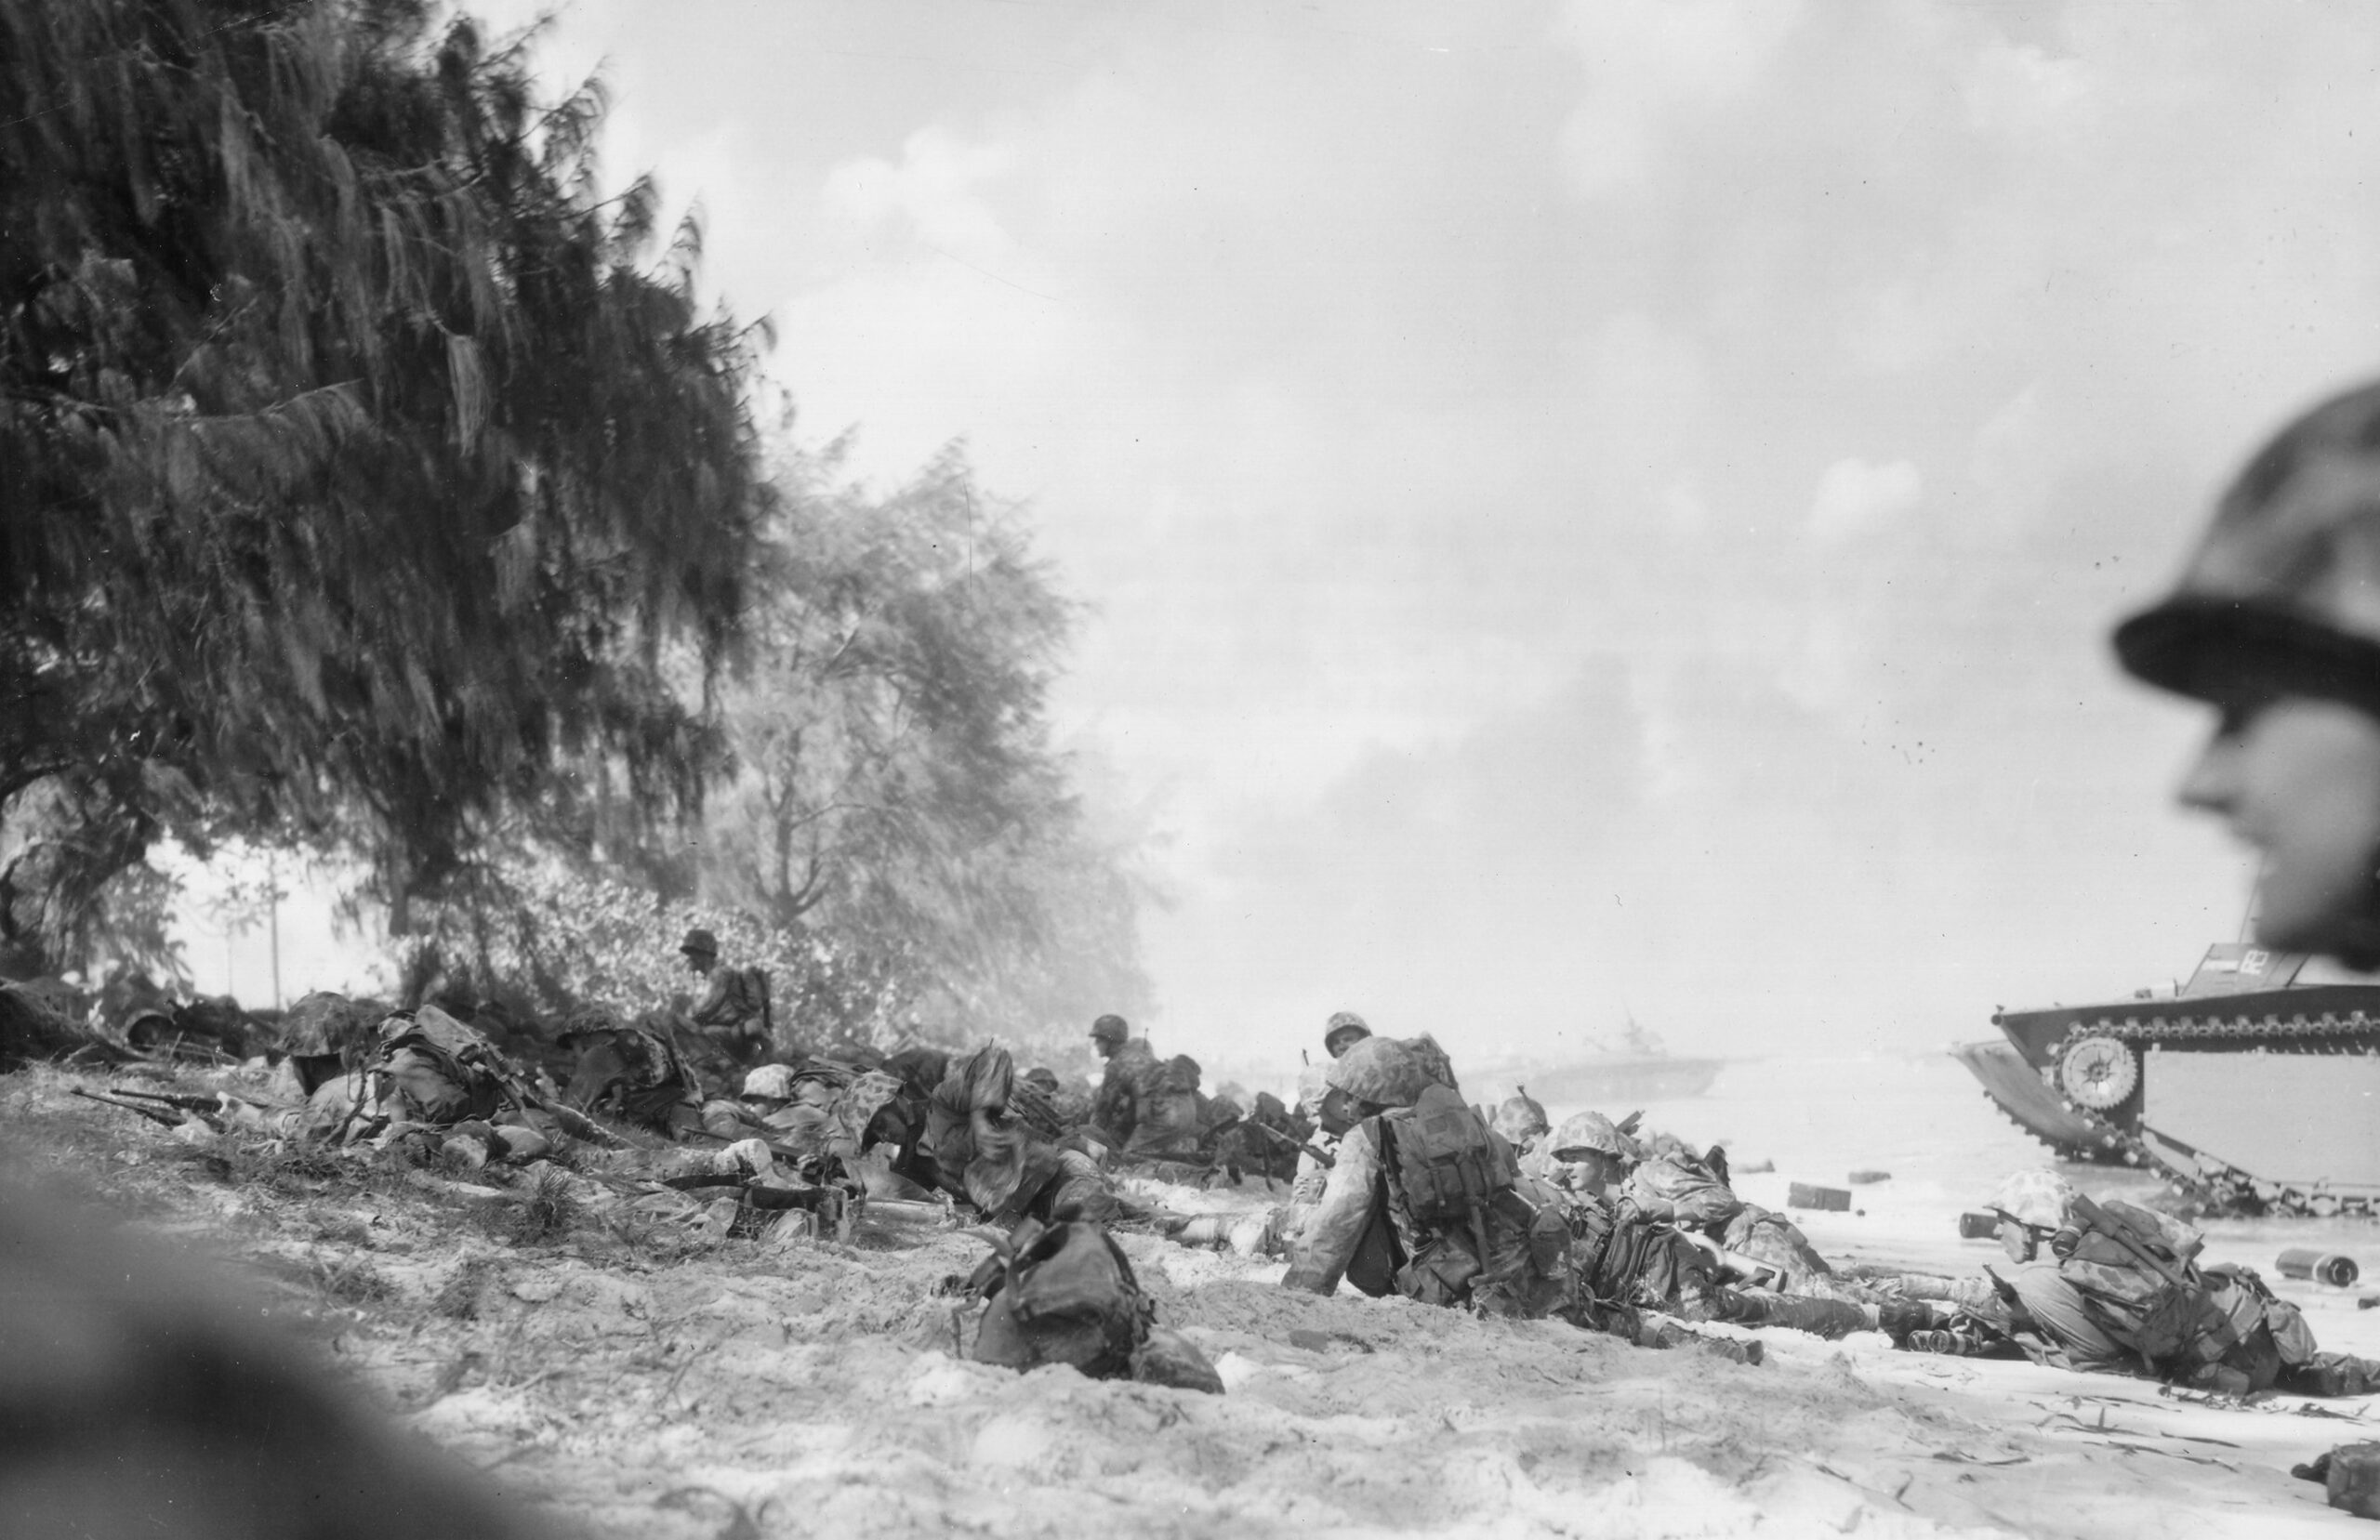 Saipan invasion in 1944